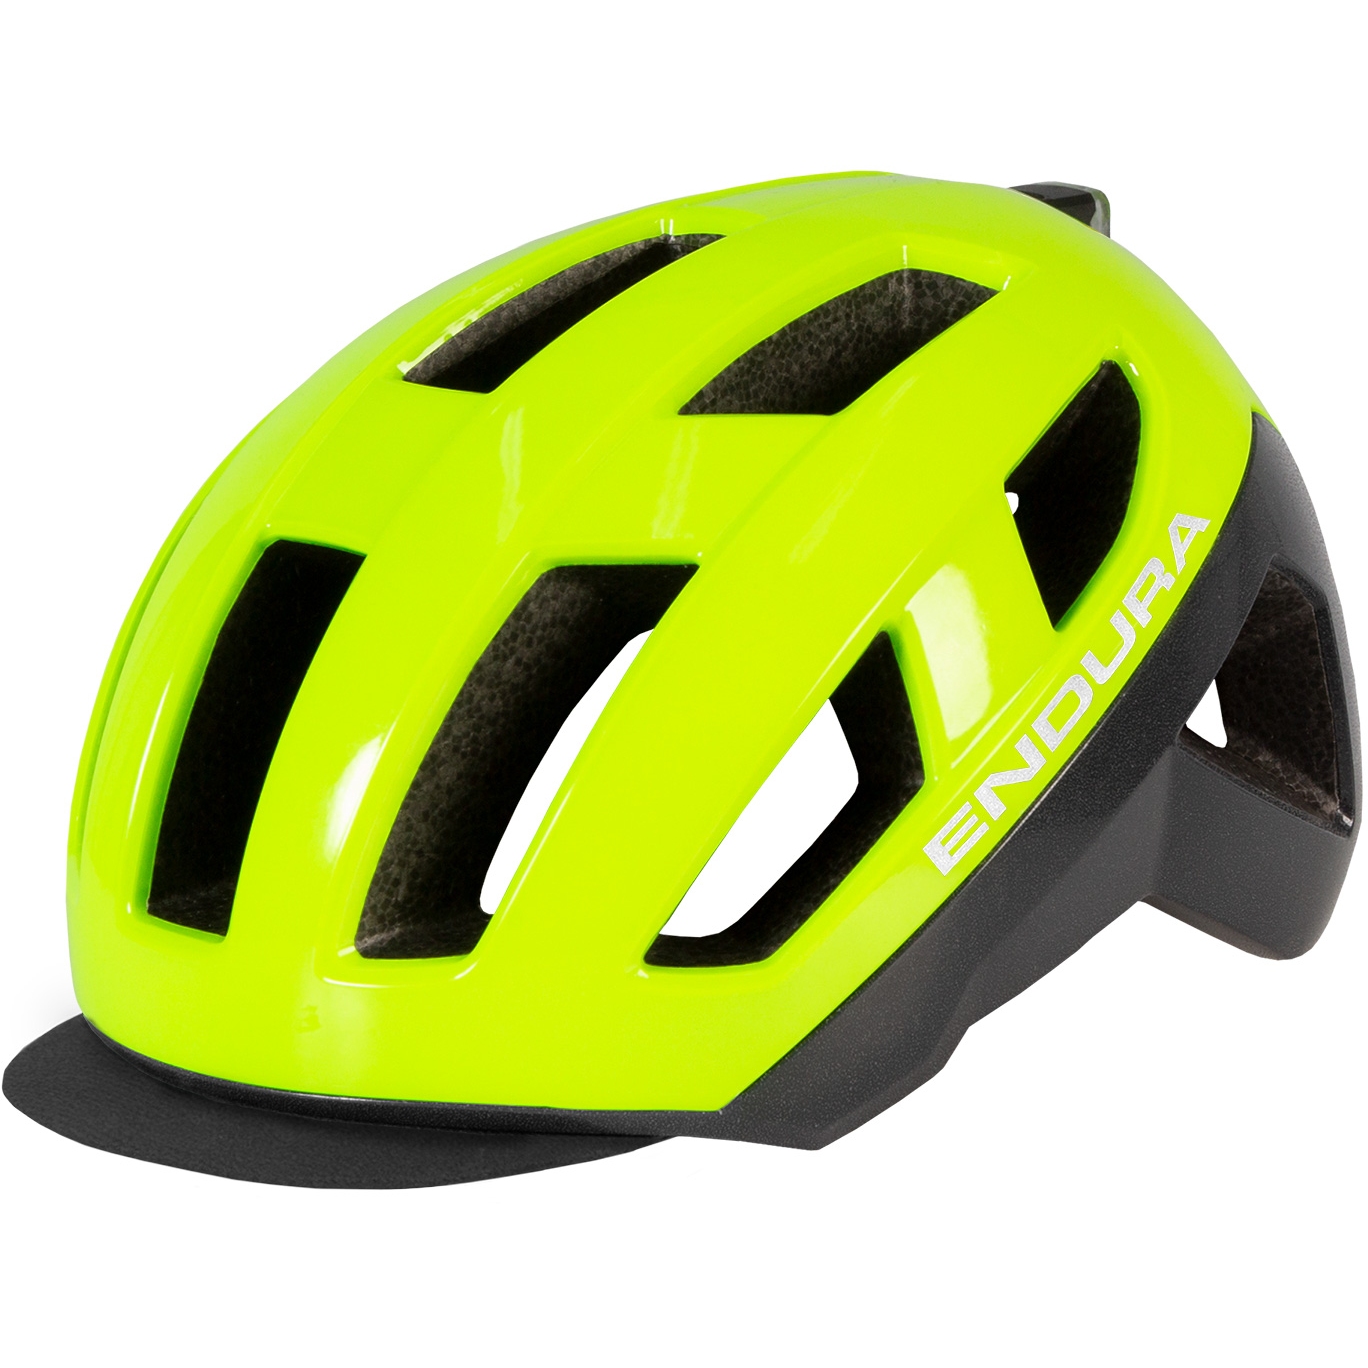 Produktbild von Endura Urban Luminite MIPS® Helm - neon-yellow